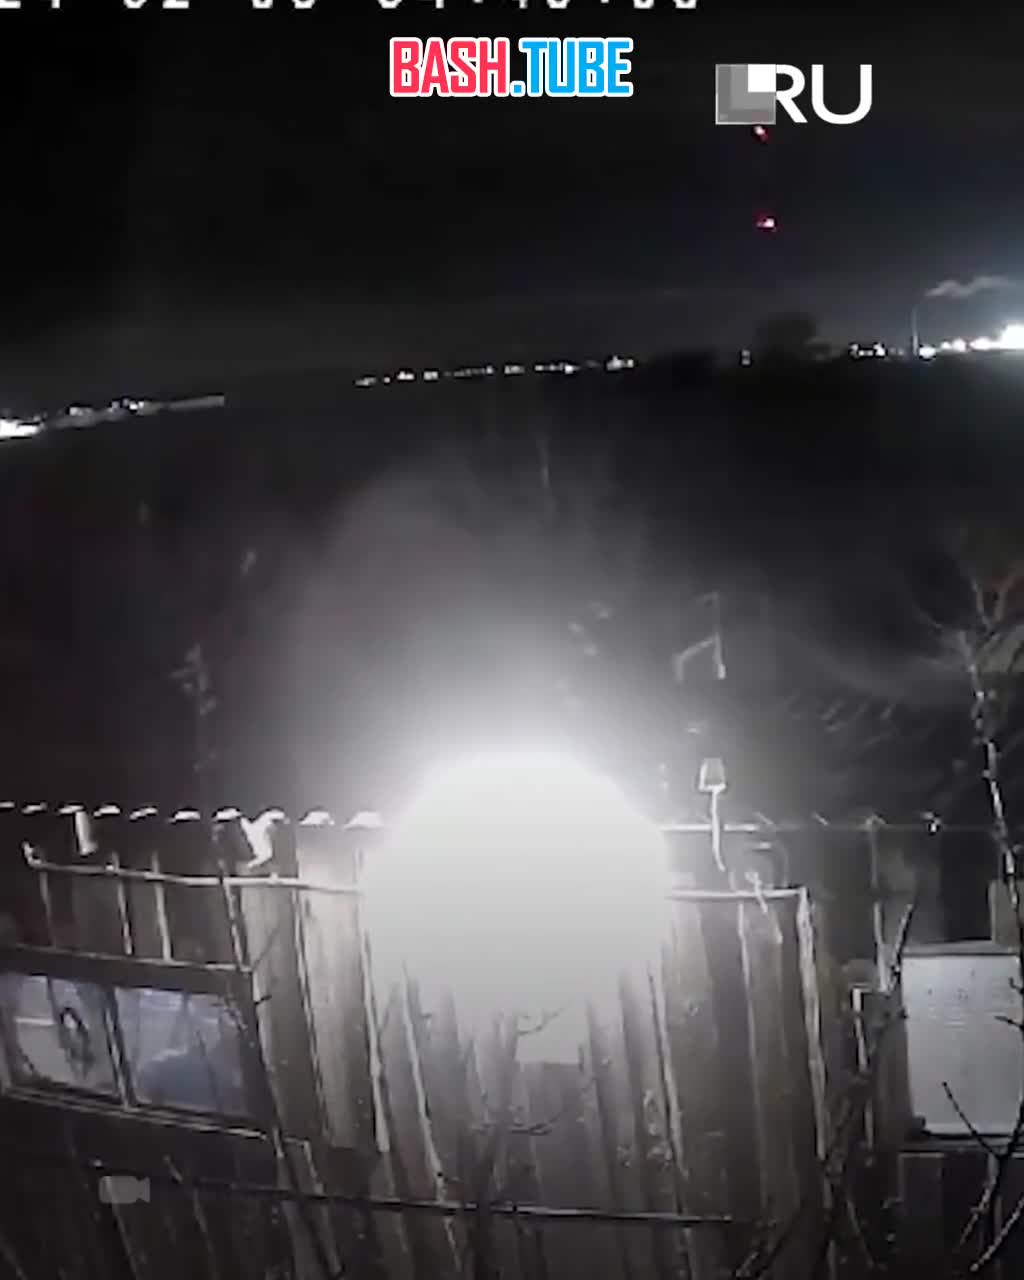  Появились кадры со взрывом на Волгоградском НПЗ